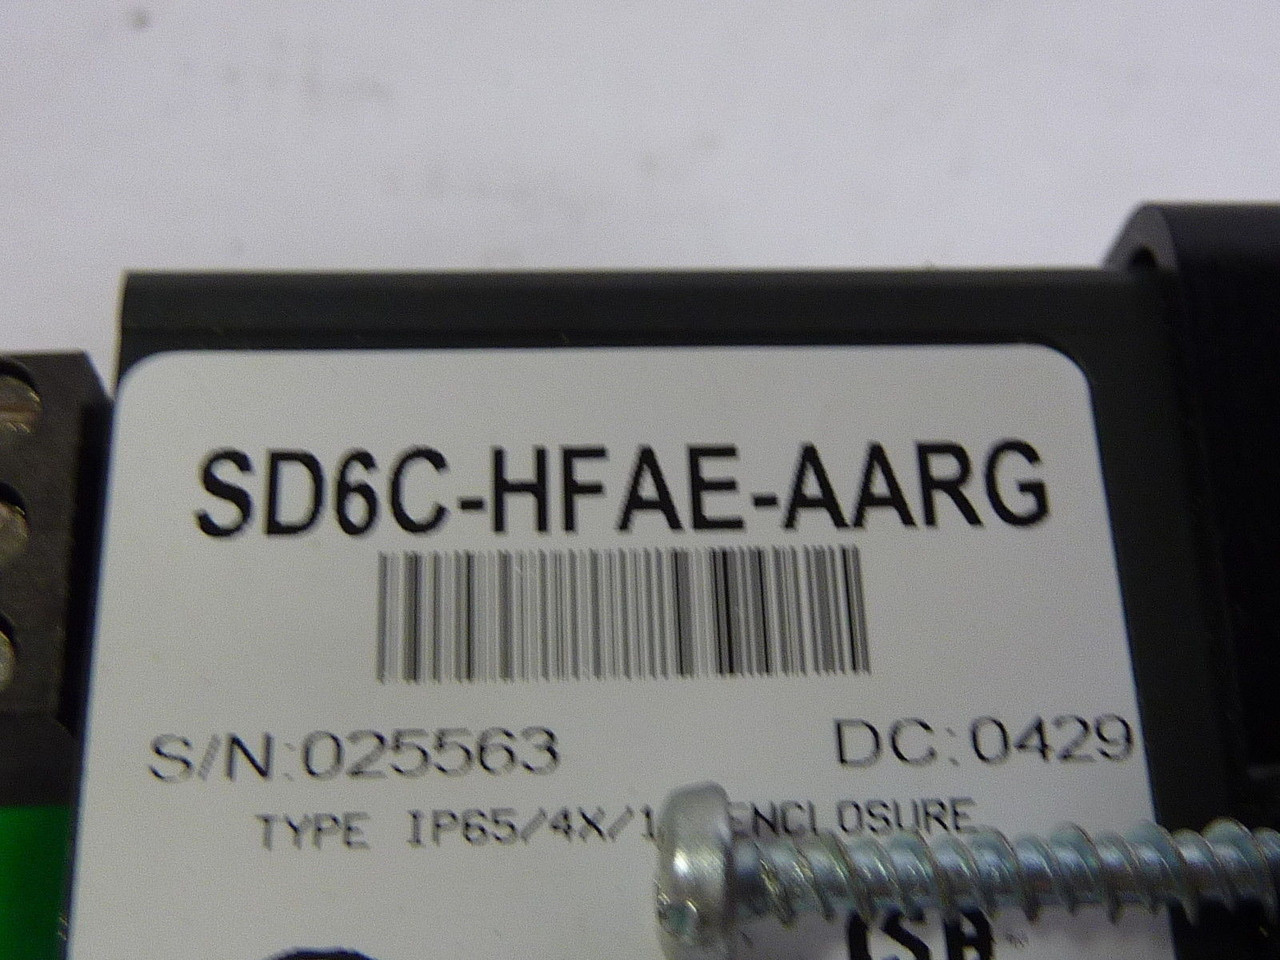 Watlow SD6C-HFAE-AARG Temperature Control USED